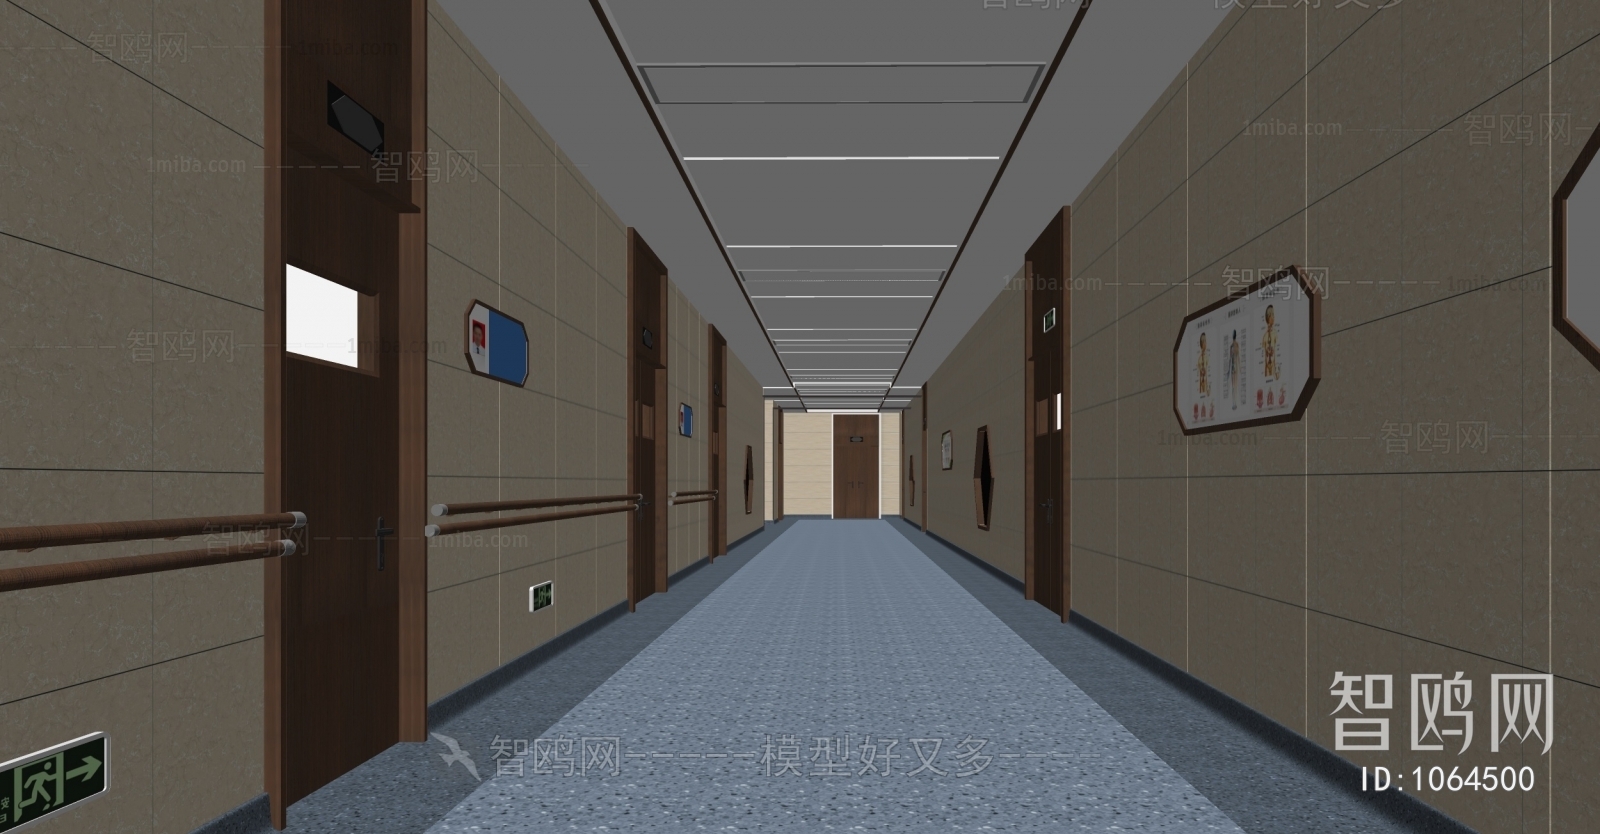 现代医院走廊、病房过道